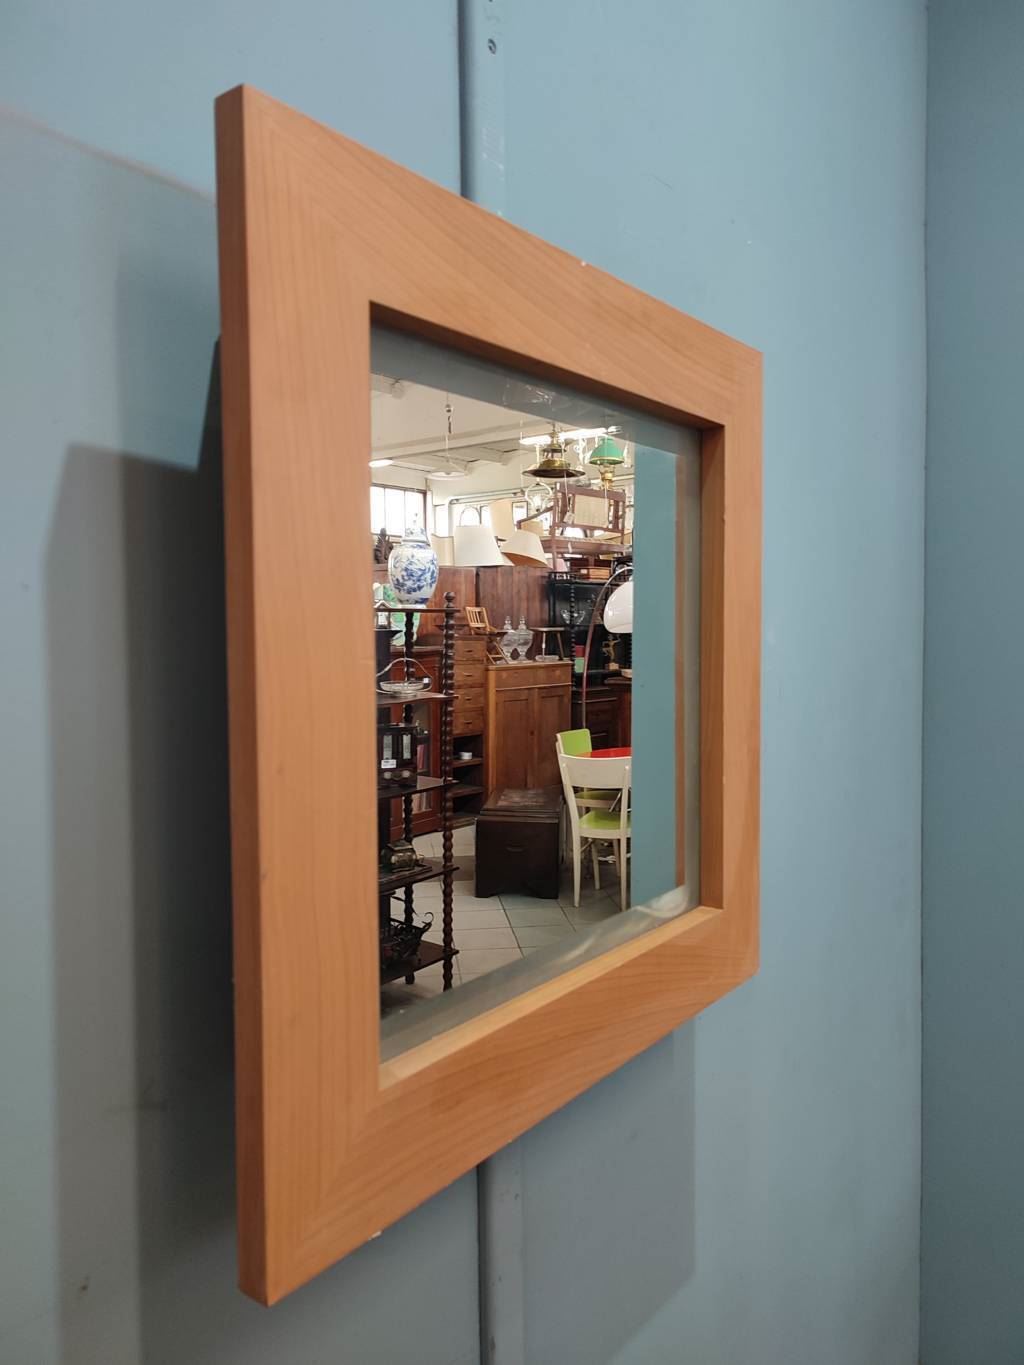 Specchio quadrato con contorno 60 x 60 cm in Legno d'acacia - SEPANG